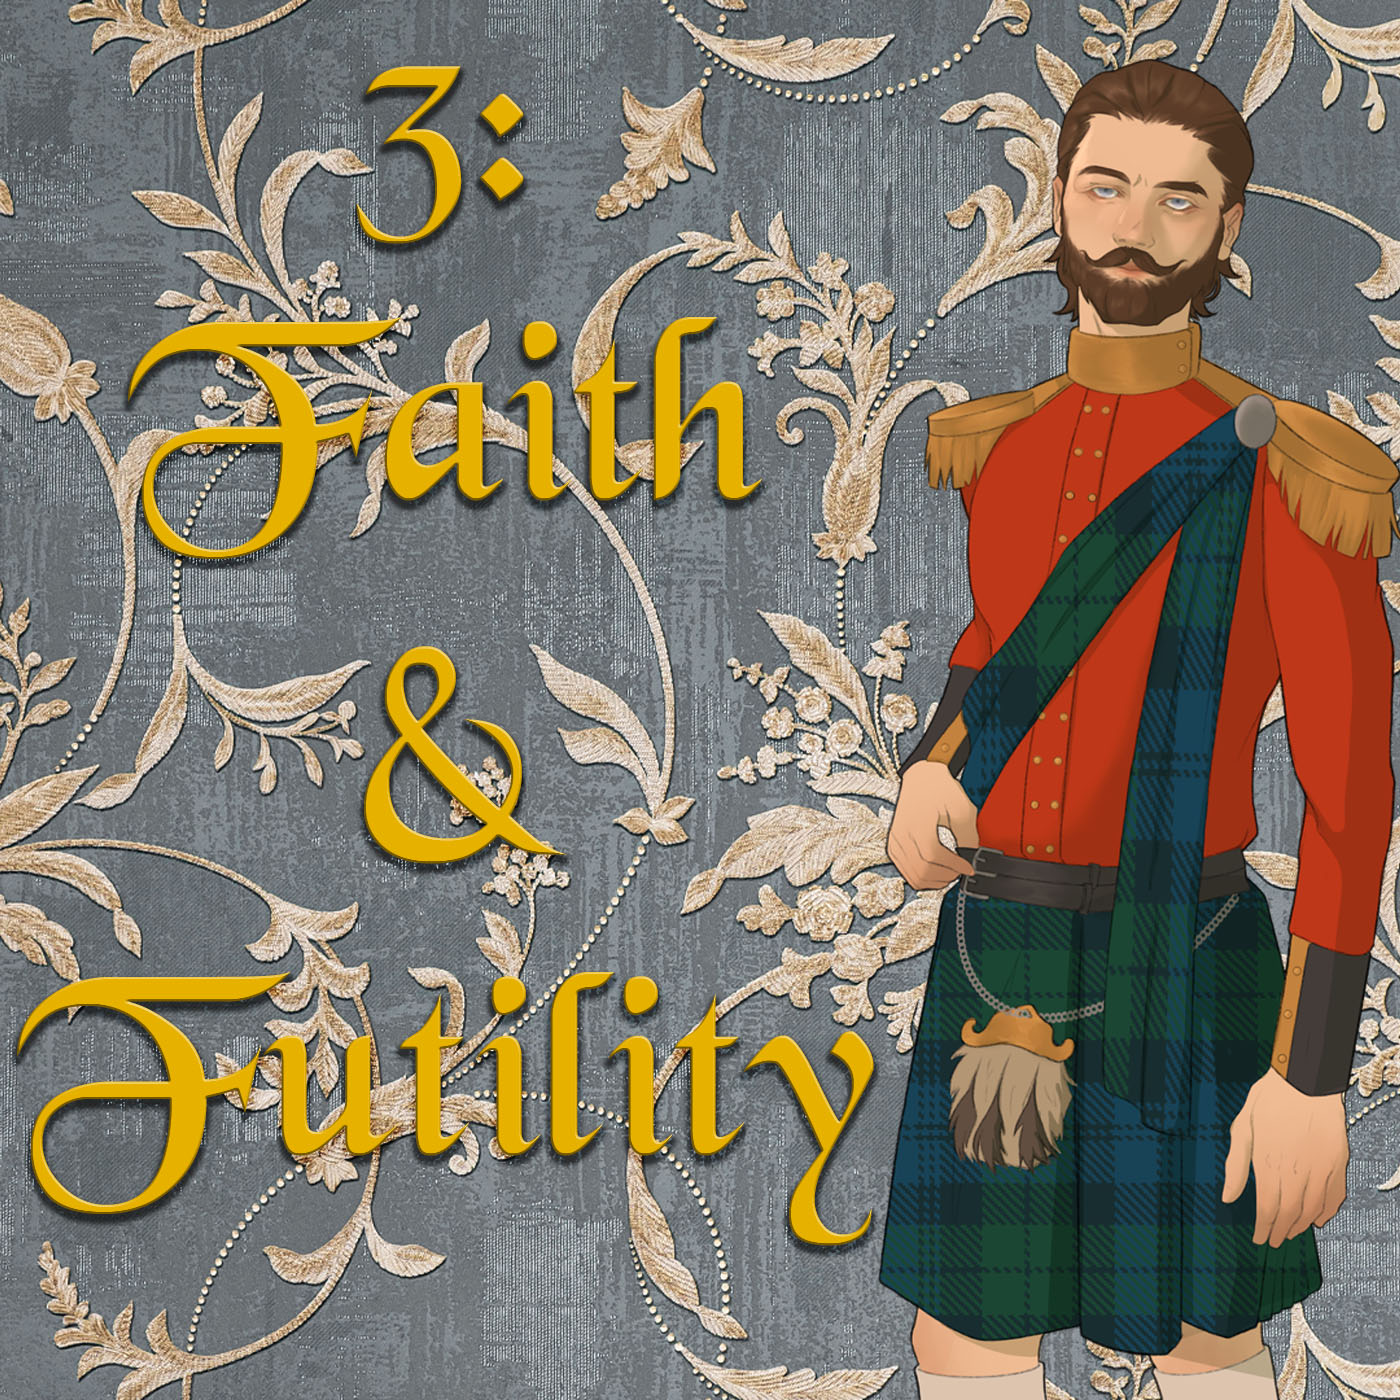 Ep 3: Of Faith and Futility